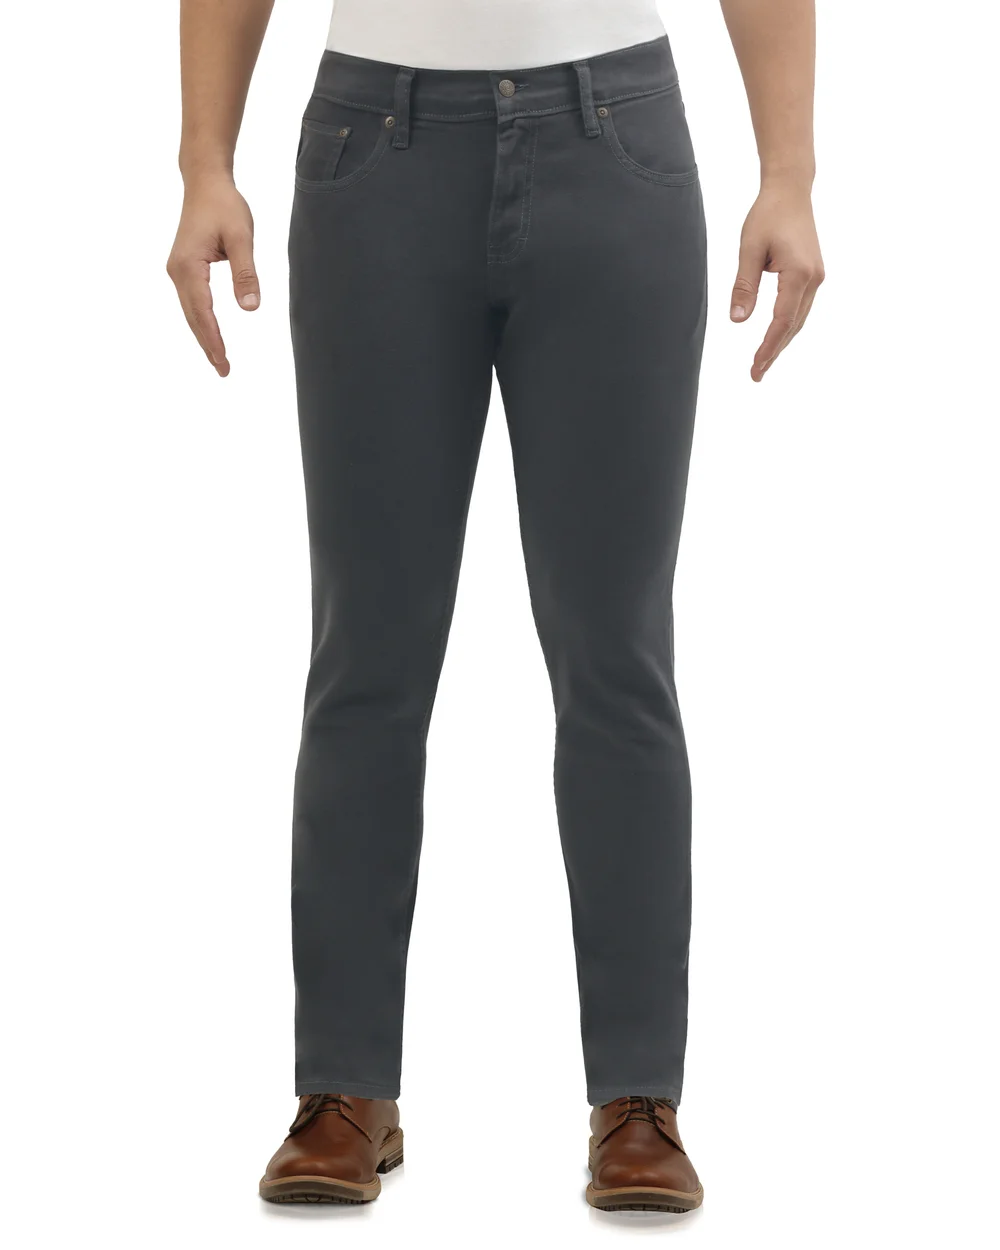 Jeans 721 skinny twill stretch gris